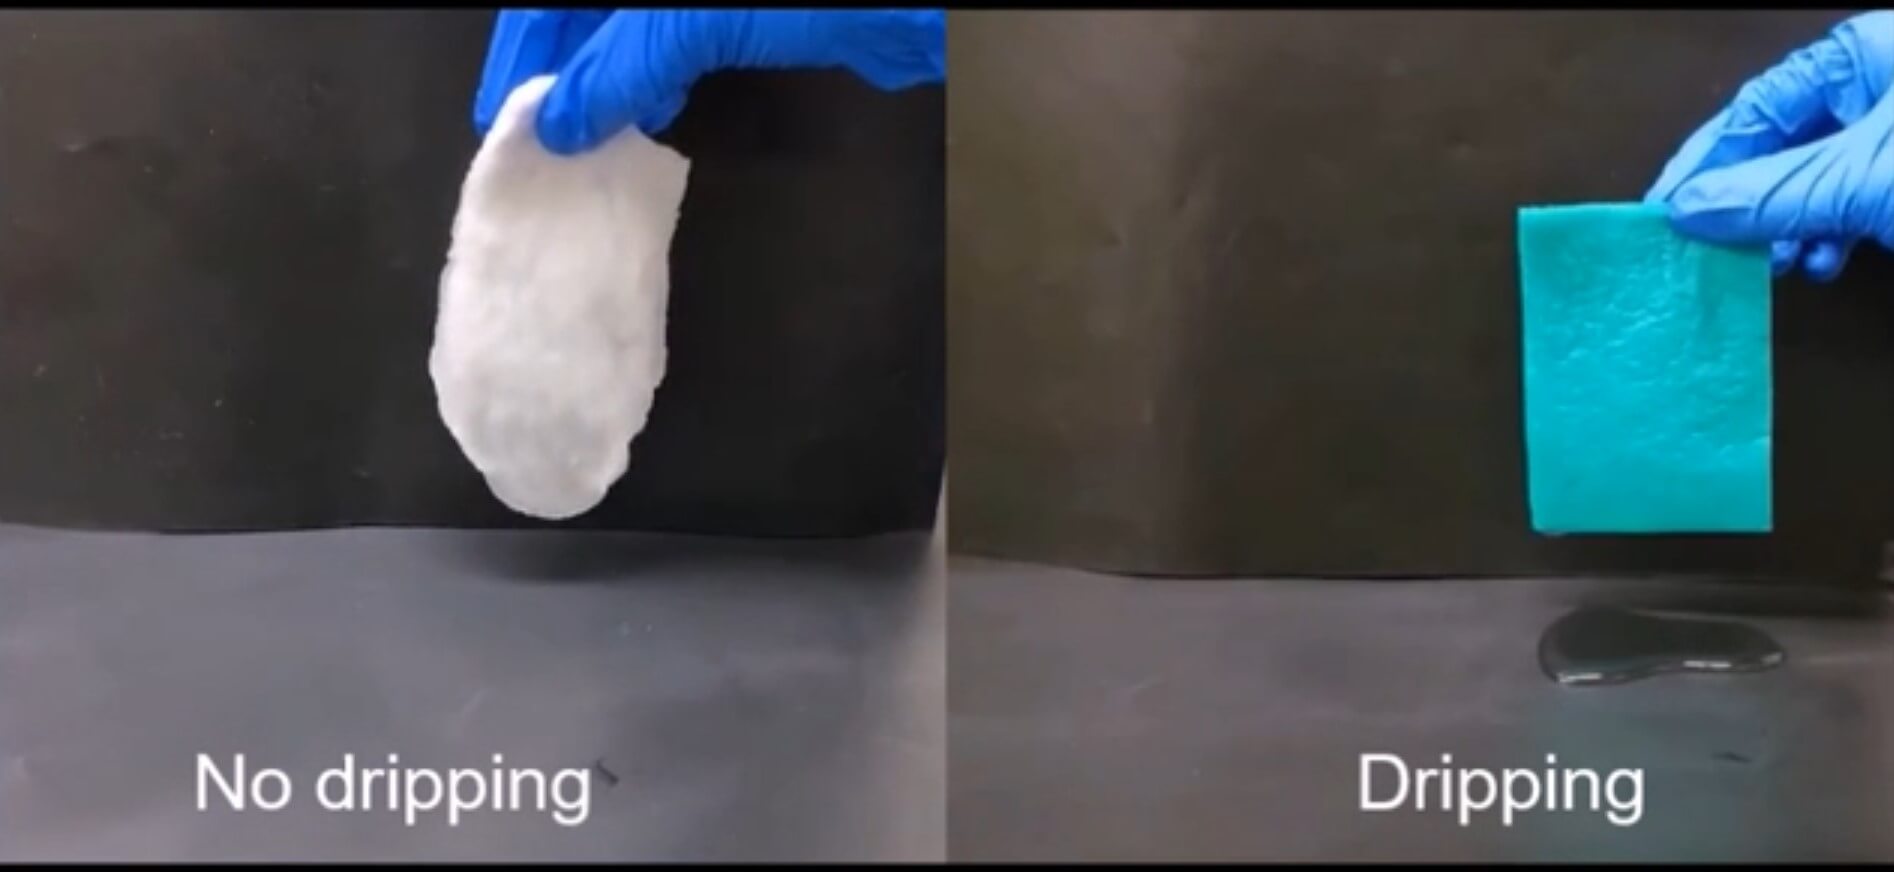 A gel paper towel picks up messes better than standard rolls